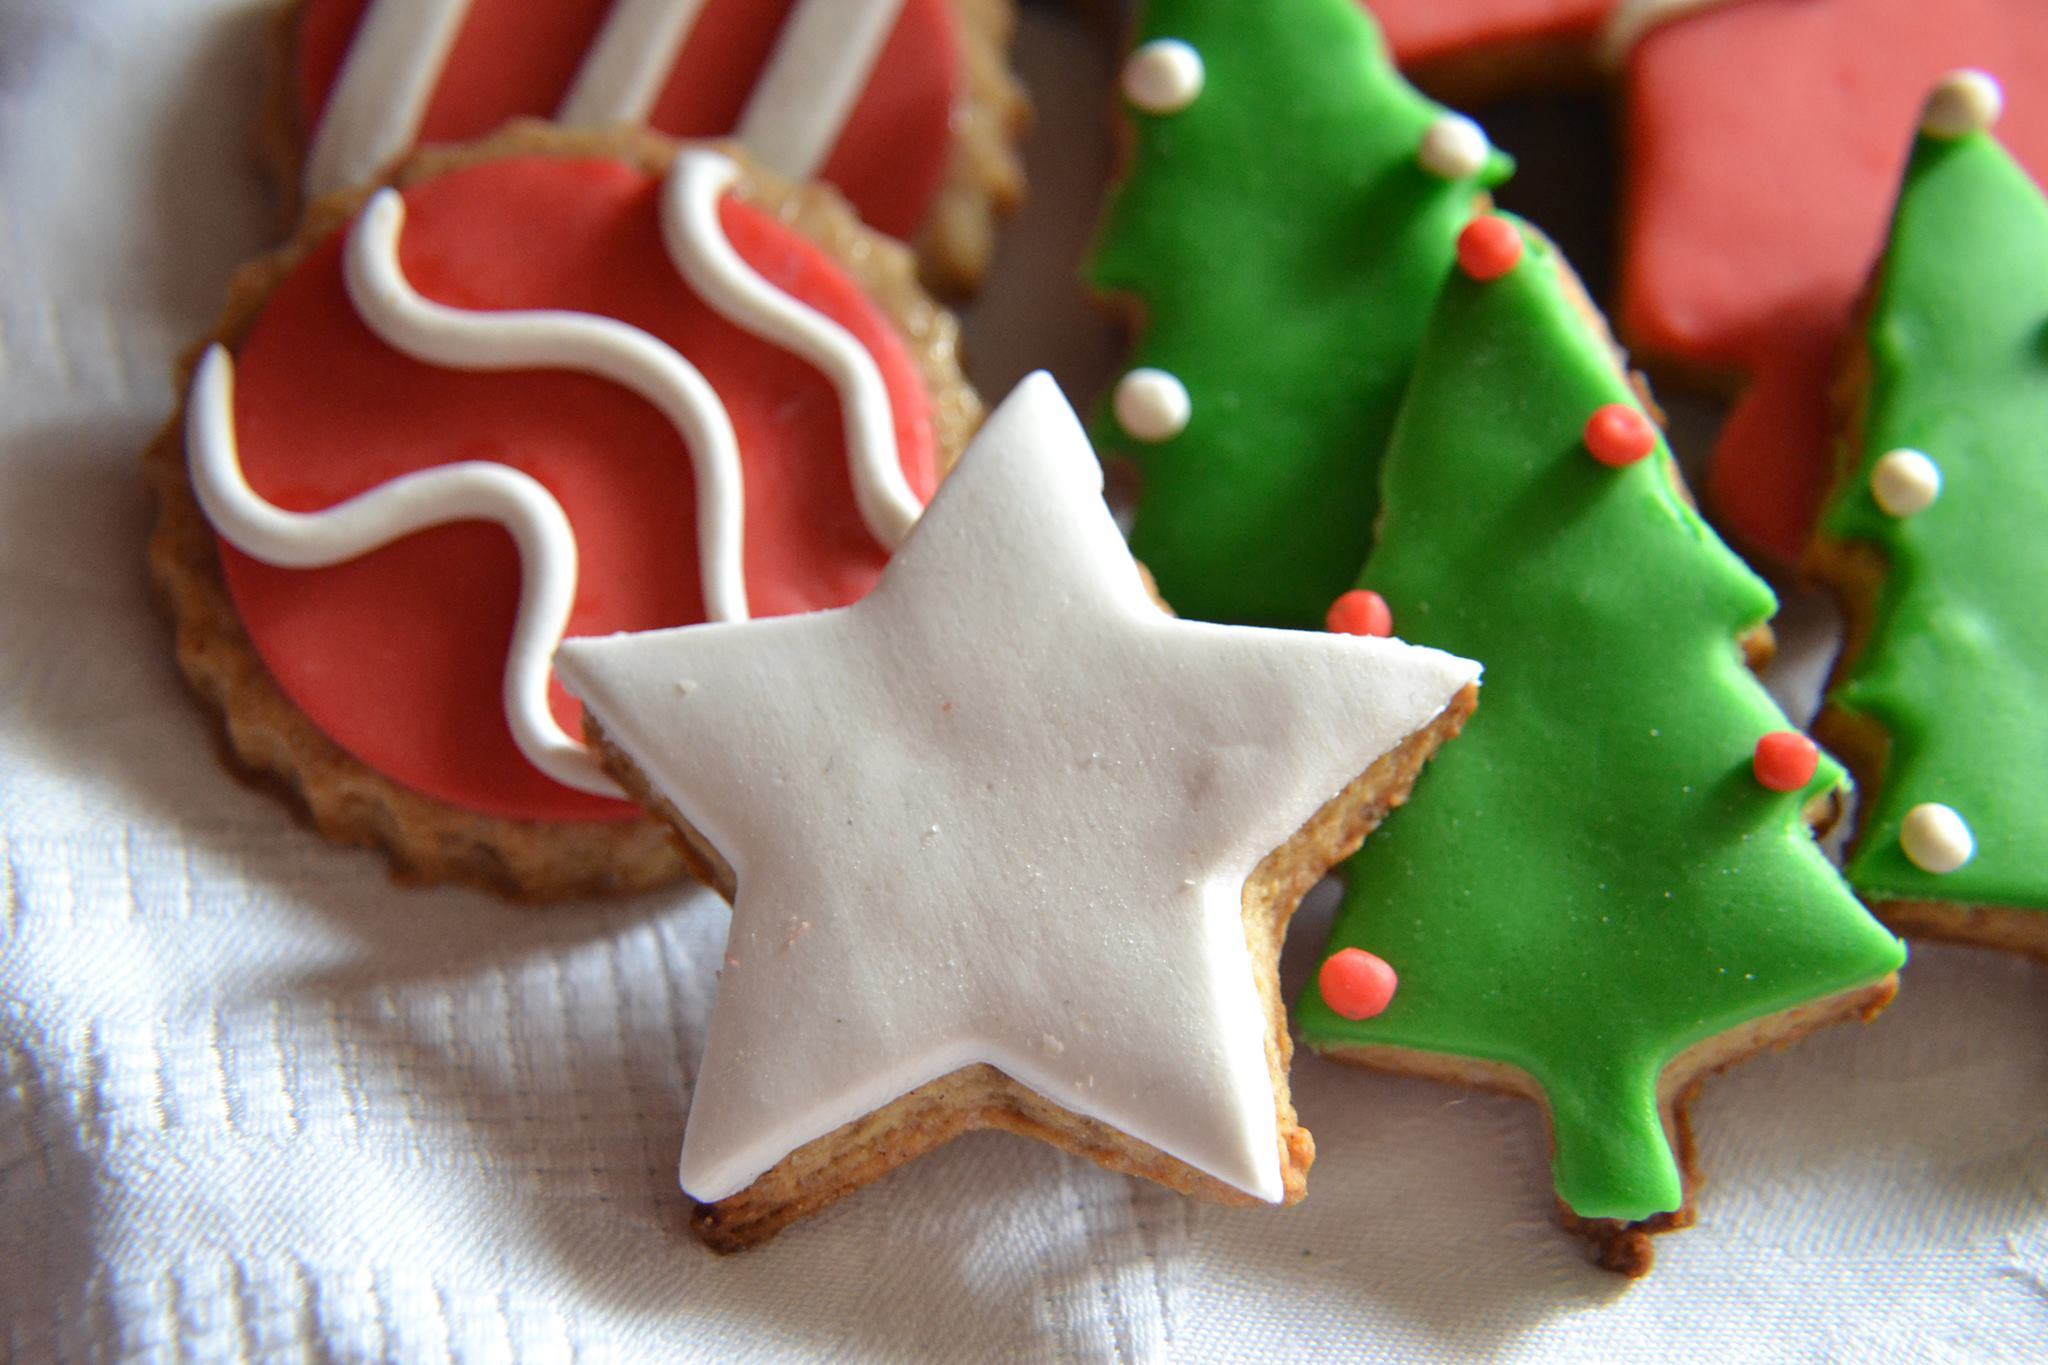 Speciale Natale: Biscotti Natalizi Zenzero e Cannella